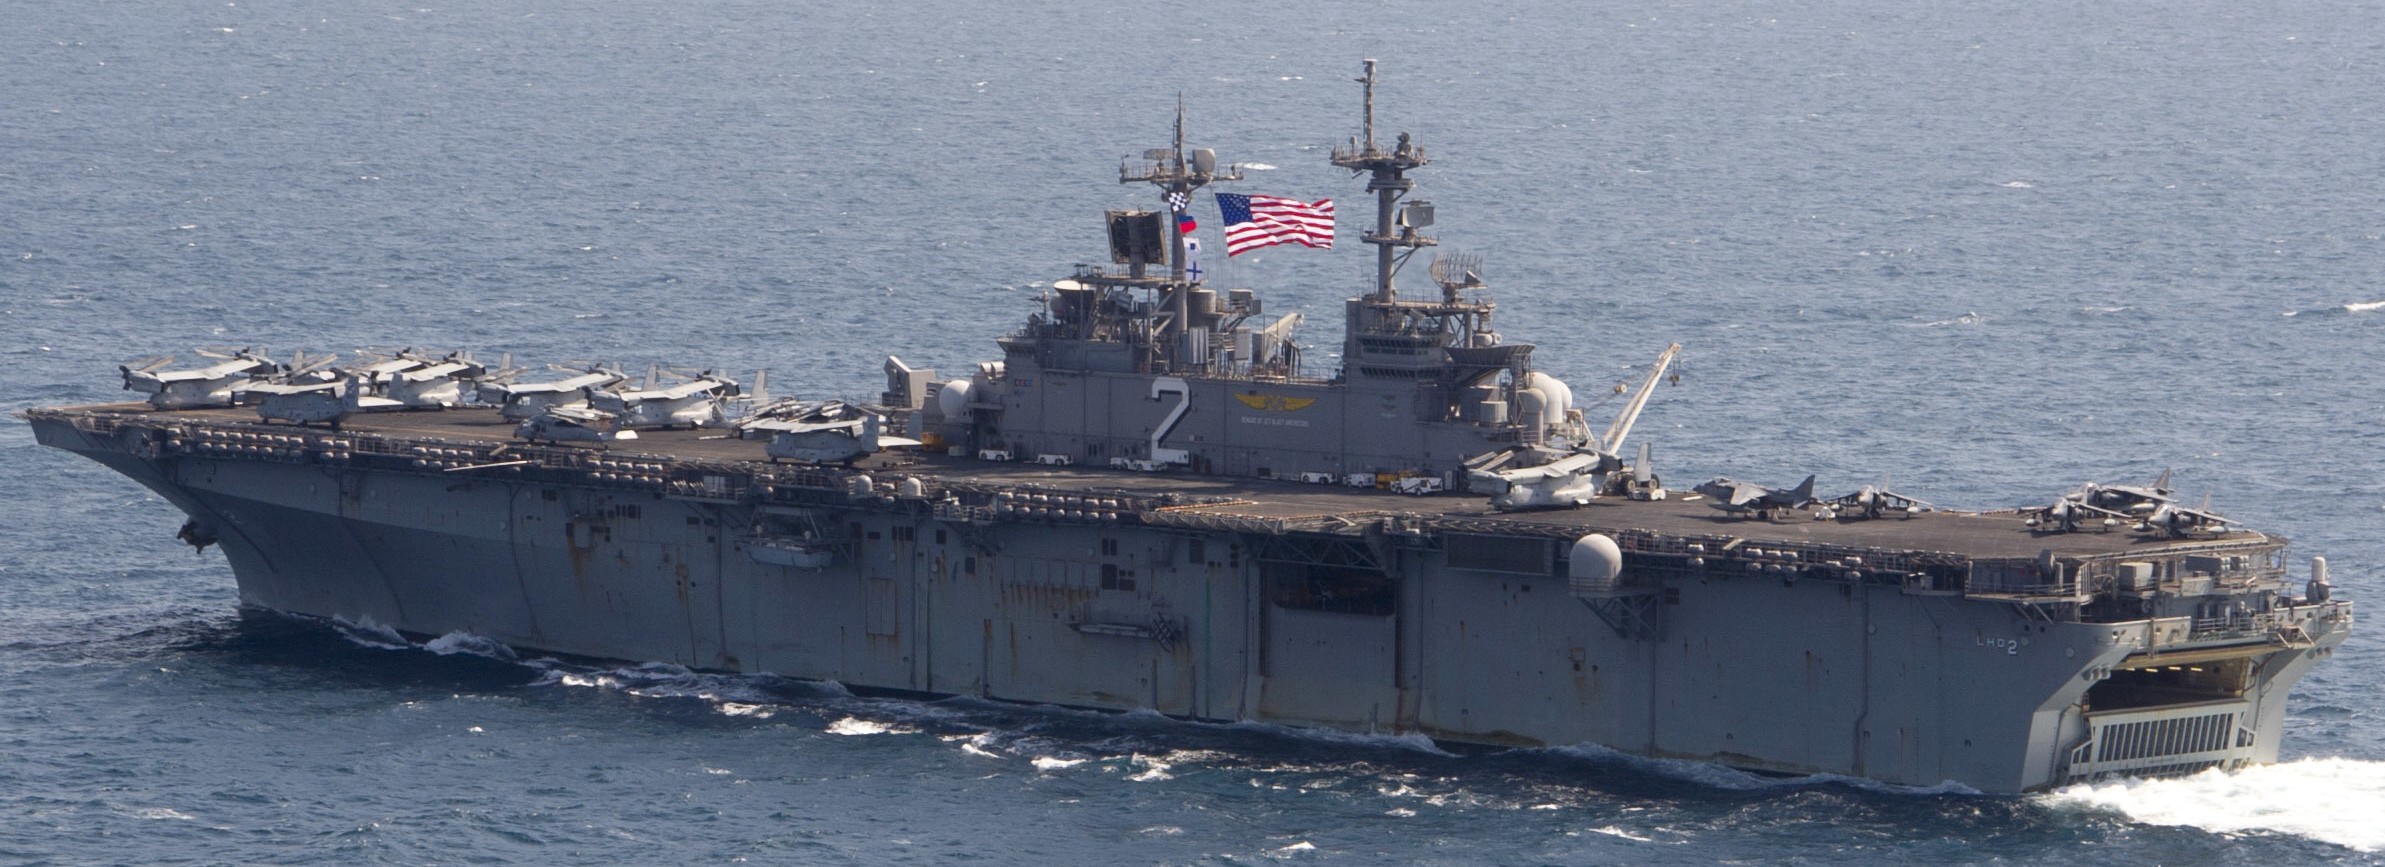 lhd-2 uss essex wasp class amphibious assault ship landing helicopter us navy marines vmm-161 arabian gulf 143